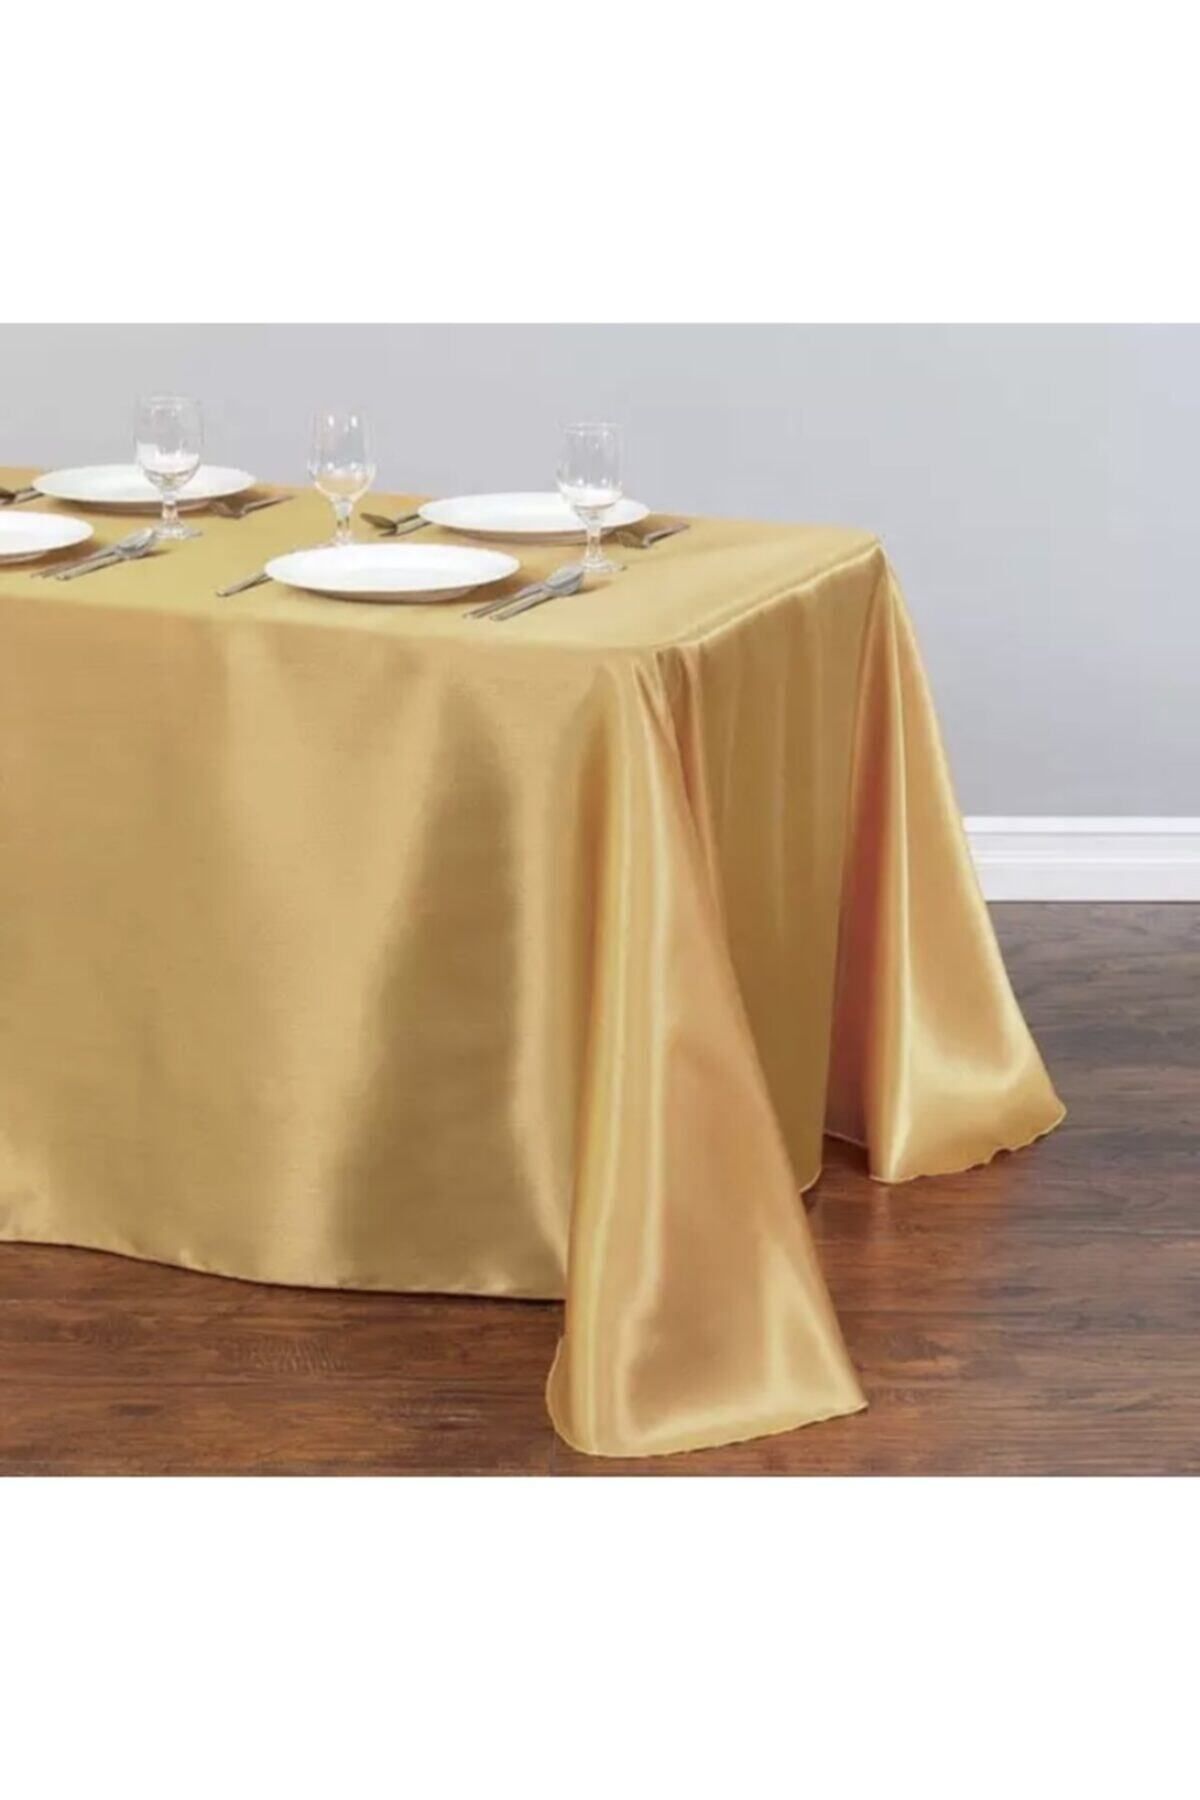 MER HOME Altın Rengi Saten Masa Örtüsü